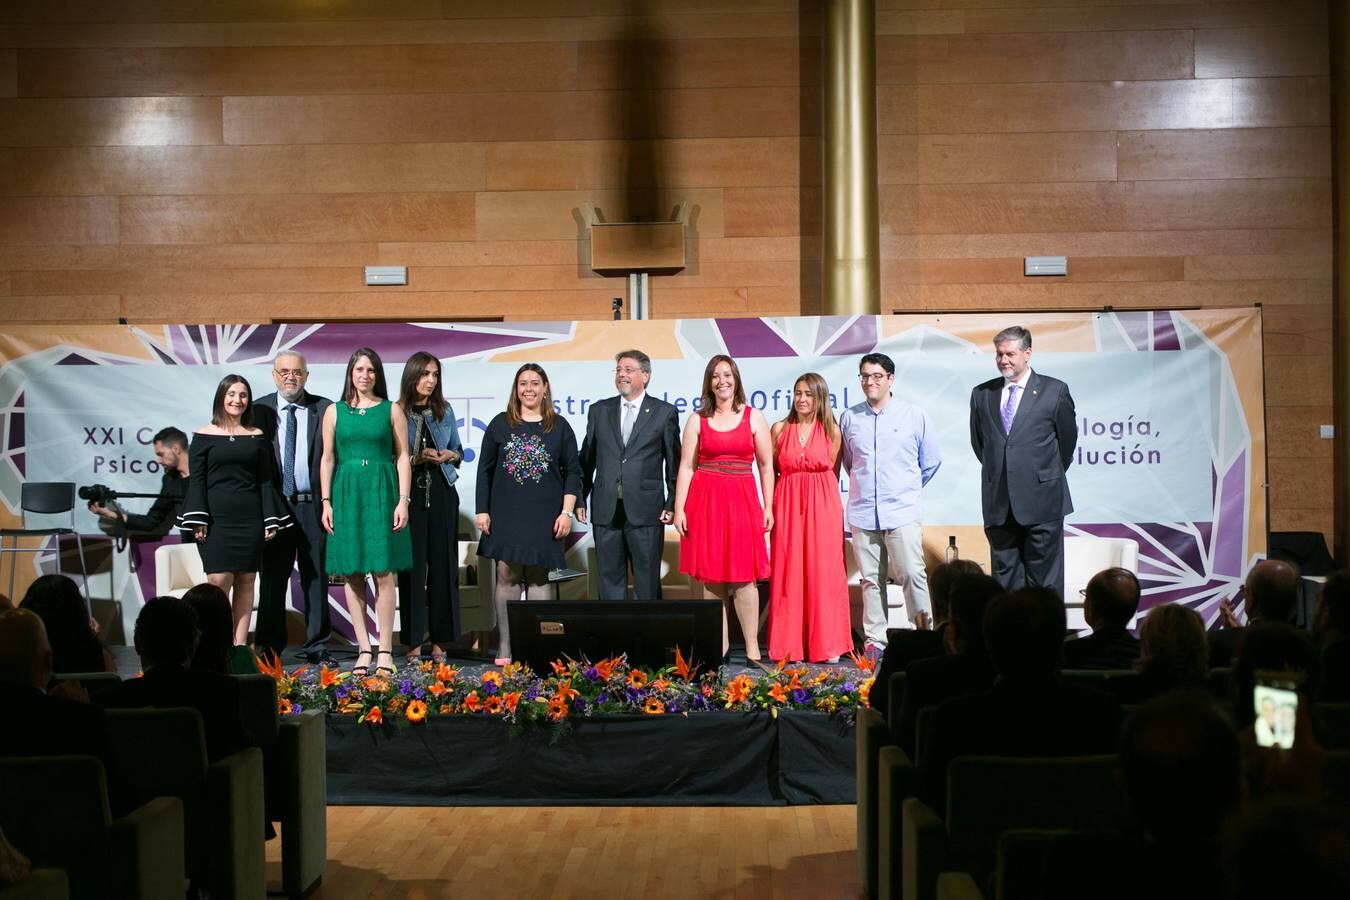 El Colegio Oficial de Médicos, la Unión Profesional de Granada y el catedrático de la Universidad de Almería Jesús de la Fuente Arias fueron algunos de los premiados durante la Convención